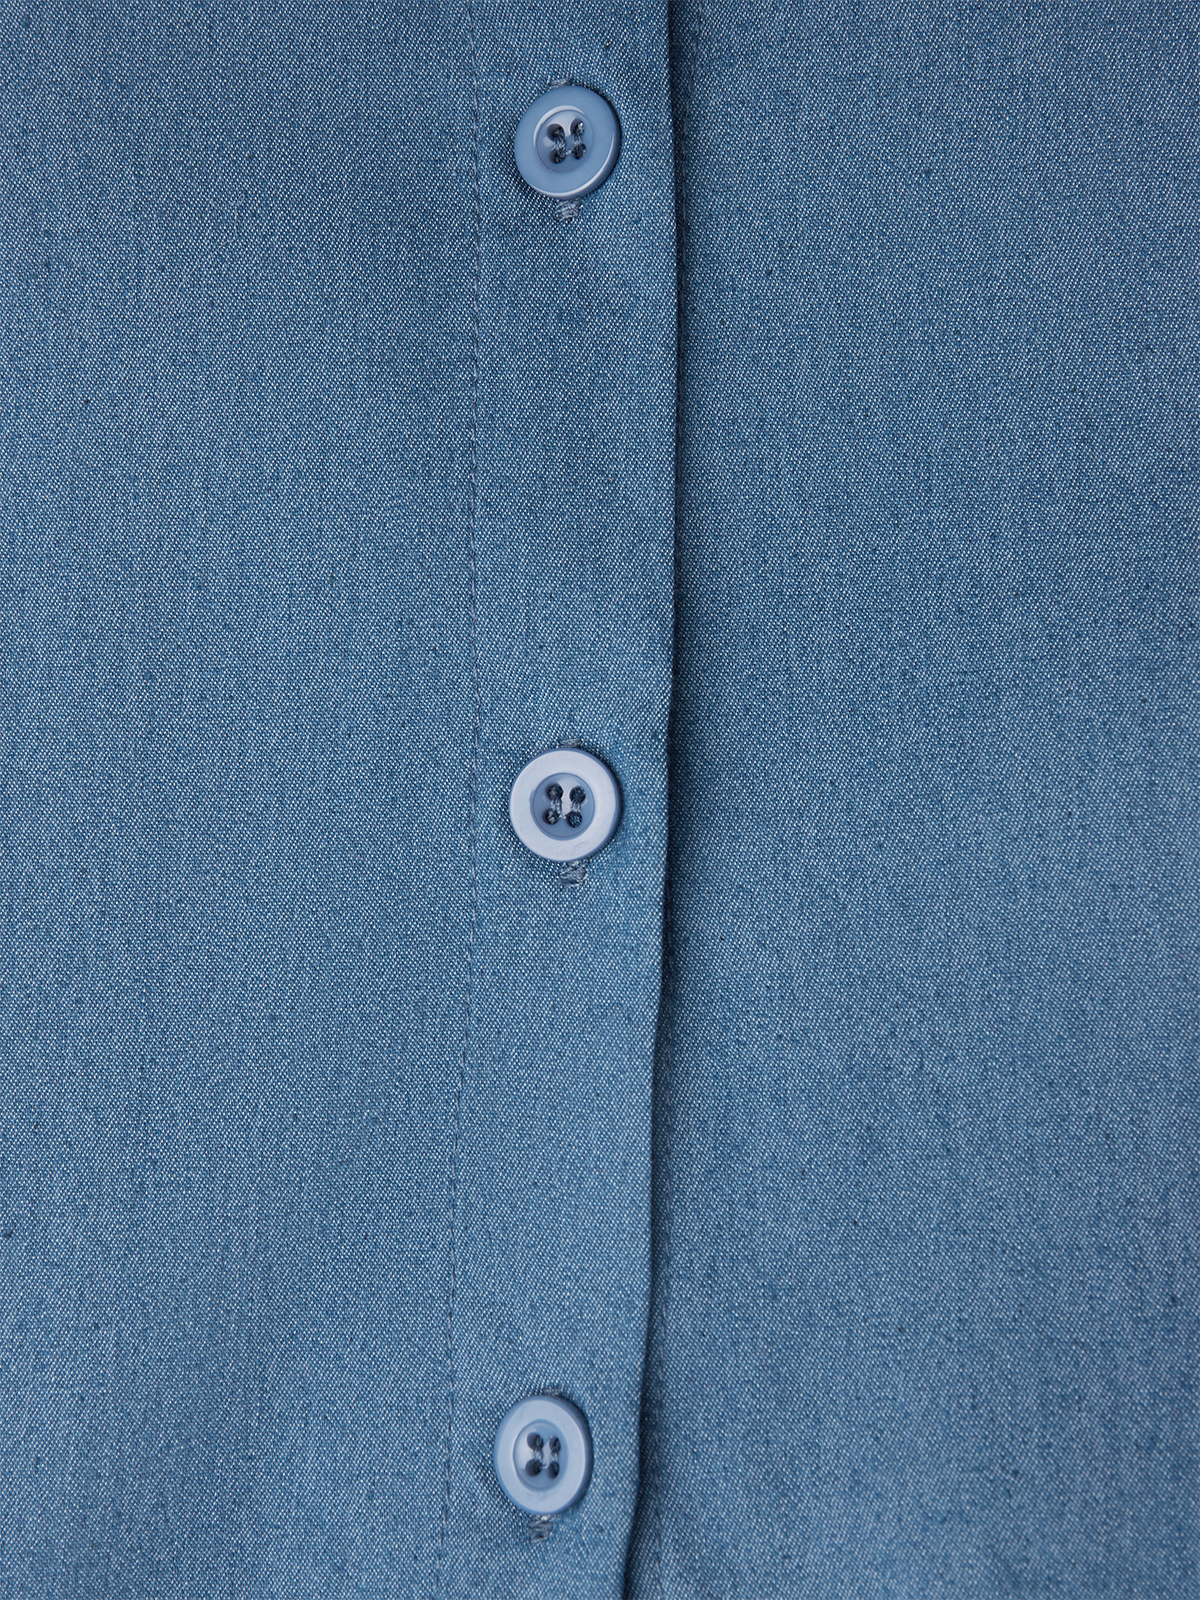 Faux Denim Hemdkragen Unifarben Urban Regelmäßige Passform Bluse